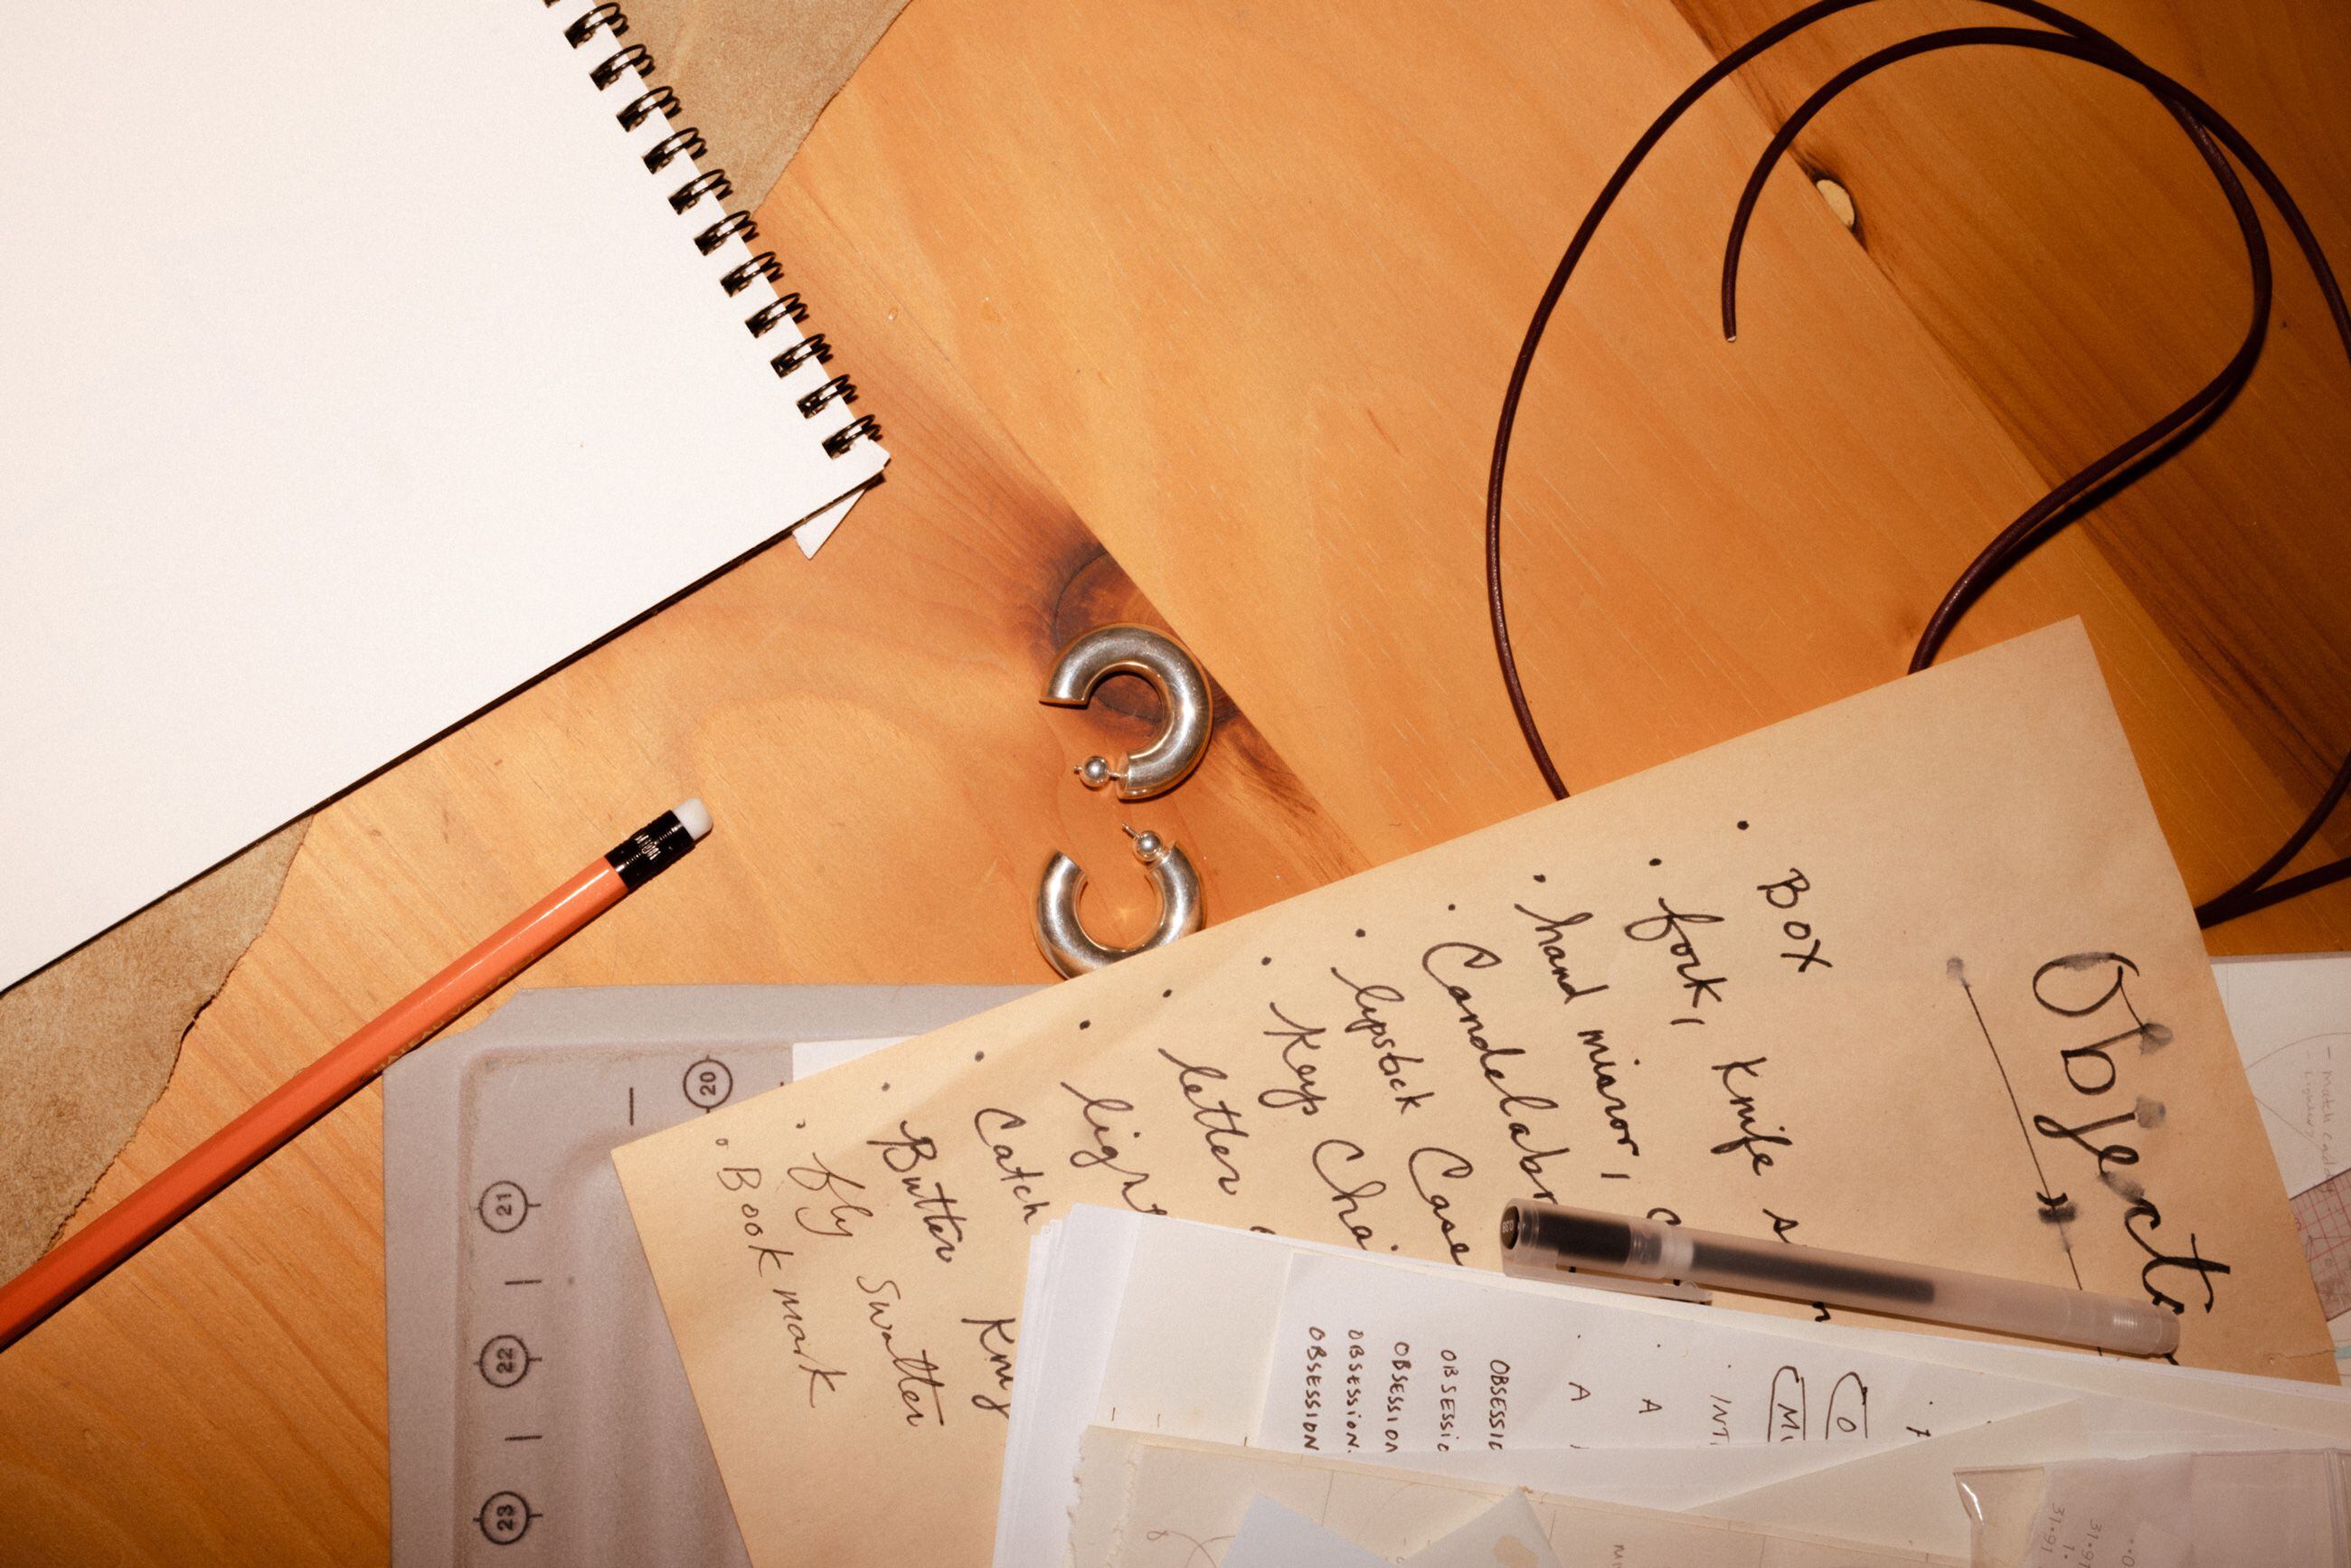 Notas e inspiraciones de la diseñadora sobre su mesa de trabajo